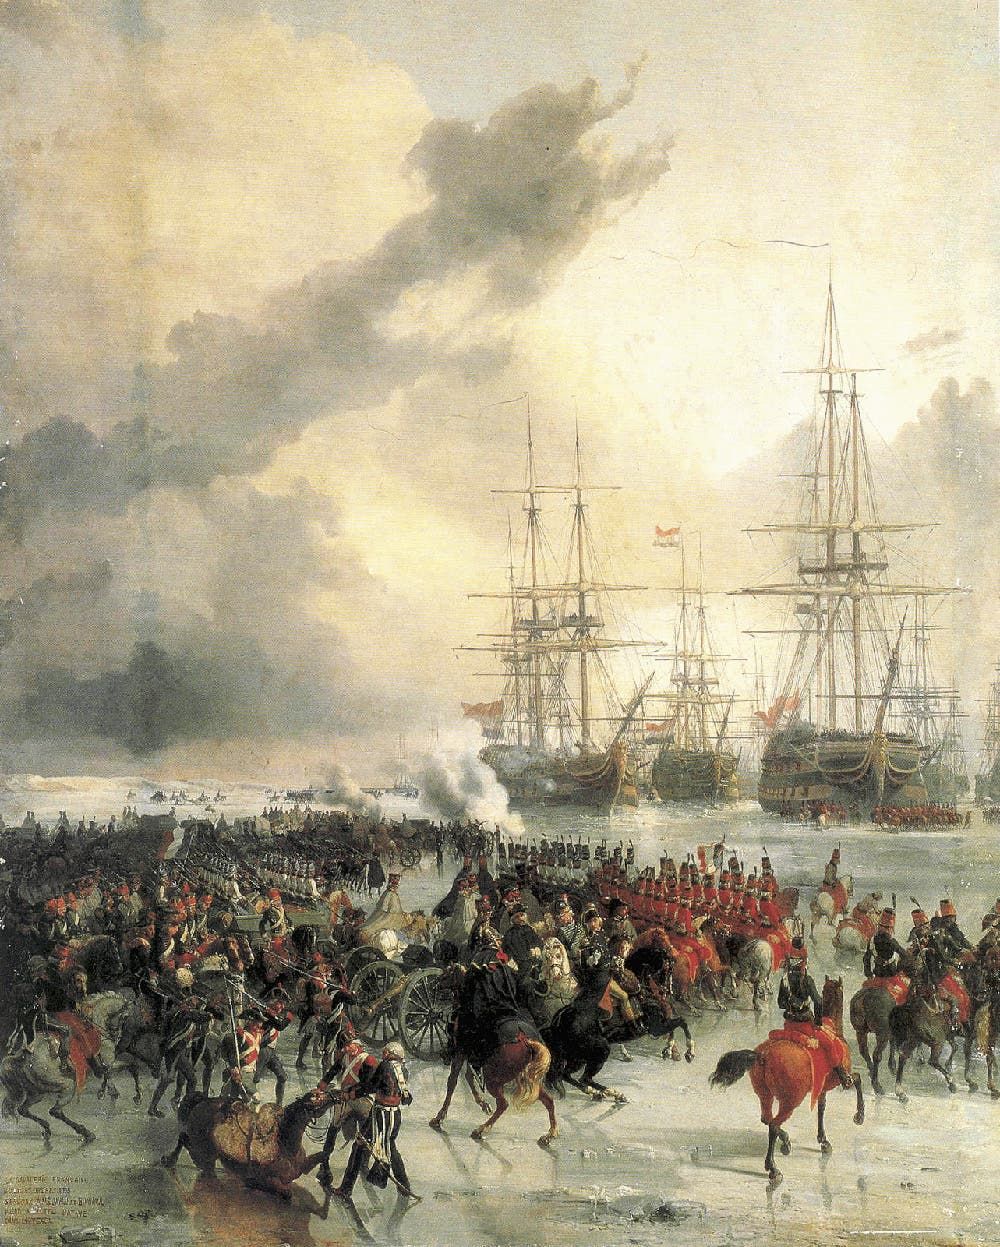 لوحة زيتية تجسد تقدم الفرسان الفرنسيين وقوات المشاة نحو السفن الهولندية